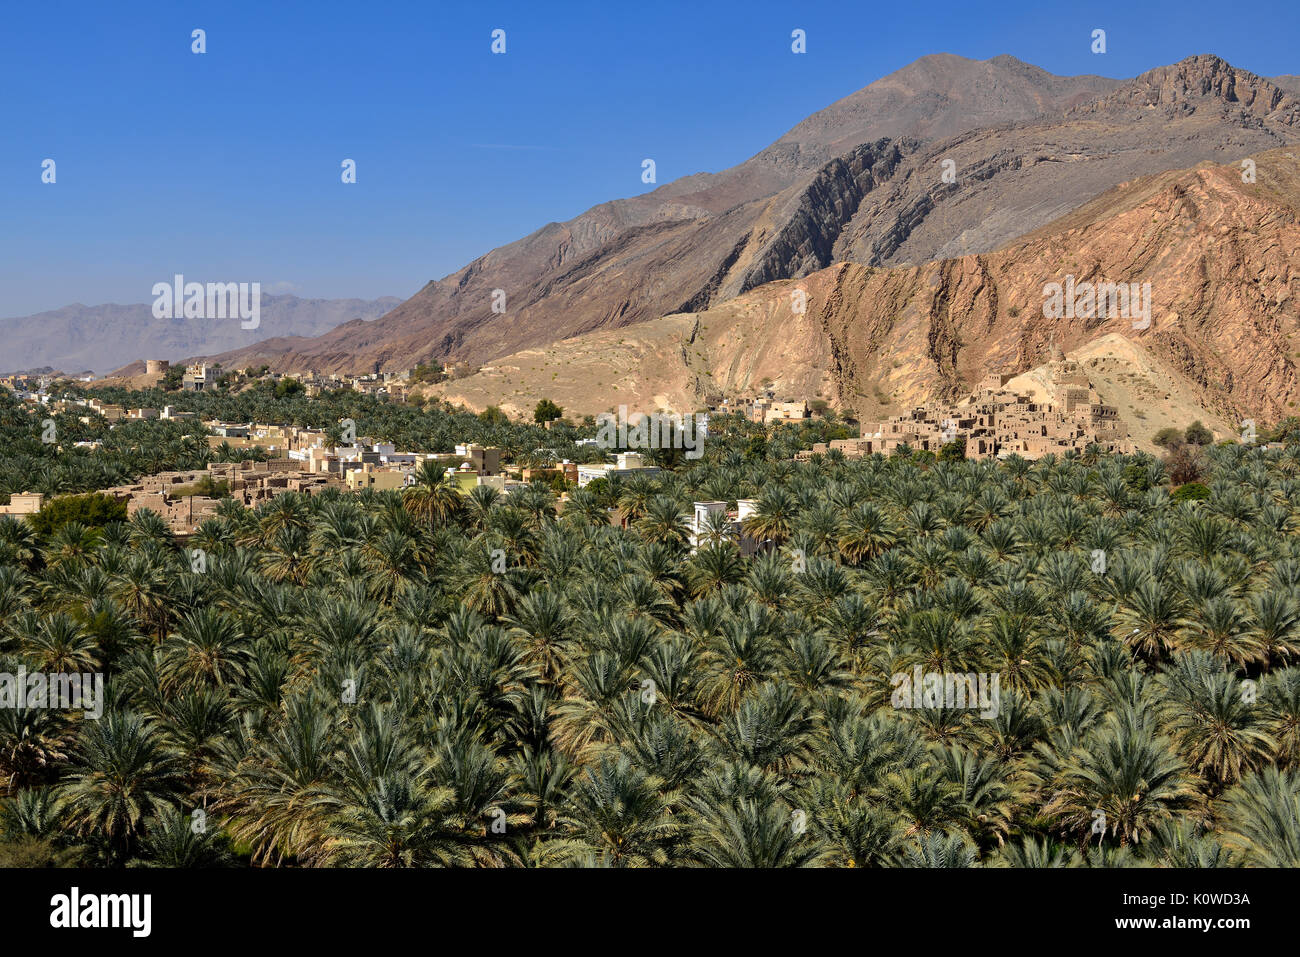 Birkat al Mawz oasis, Hayar al Gharbi montañas, Dakhiliyah, Omán Foto de stock